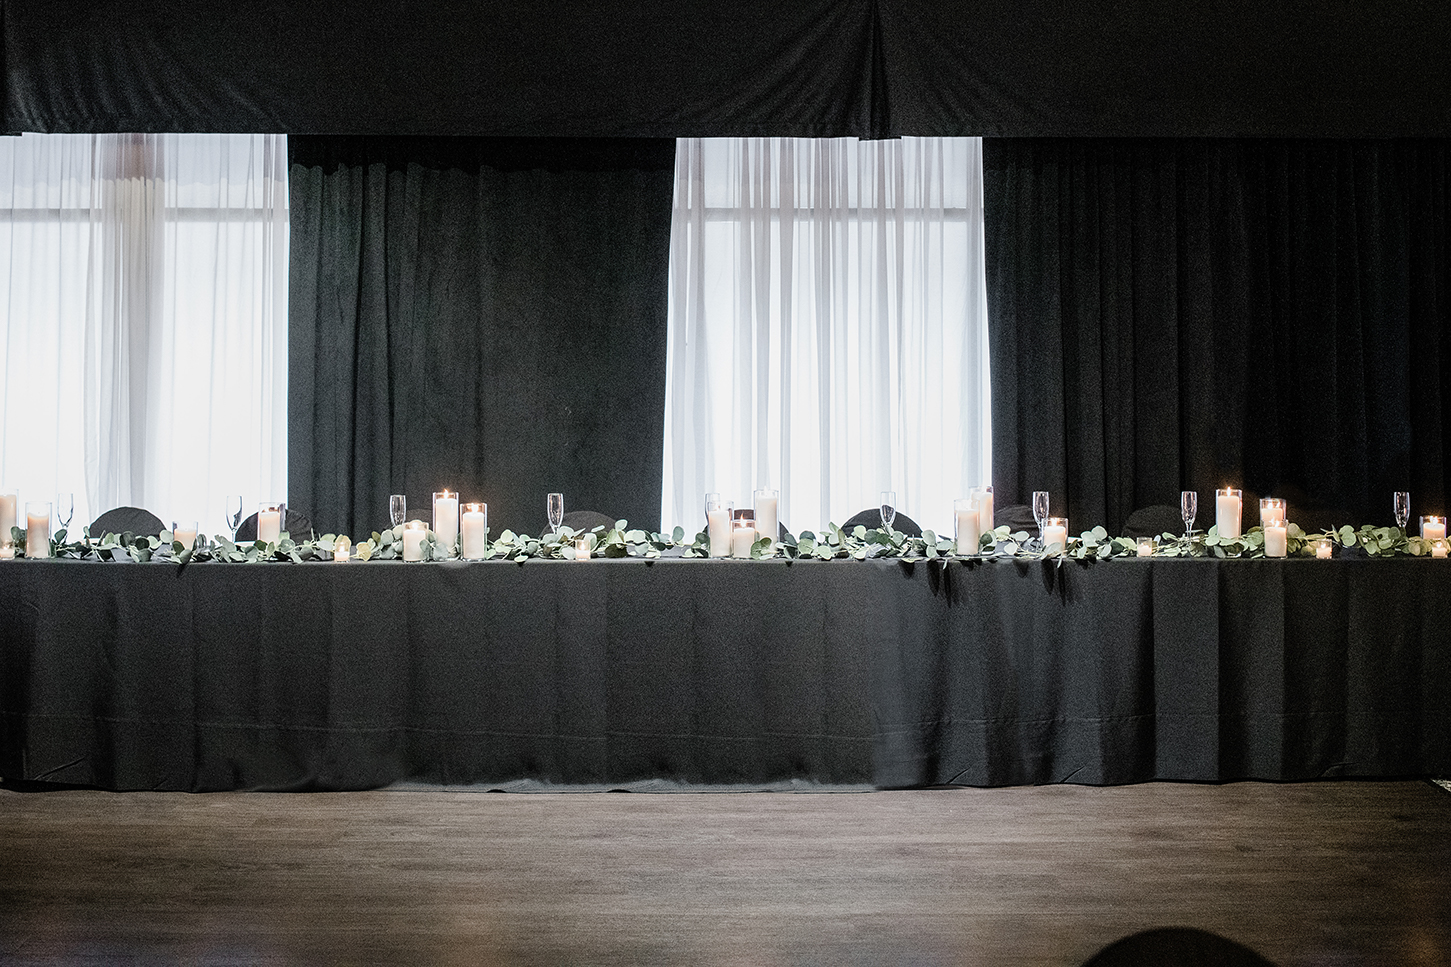 Wedding reception venues in Covington, KY